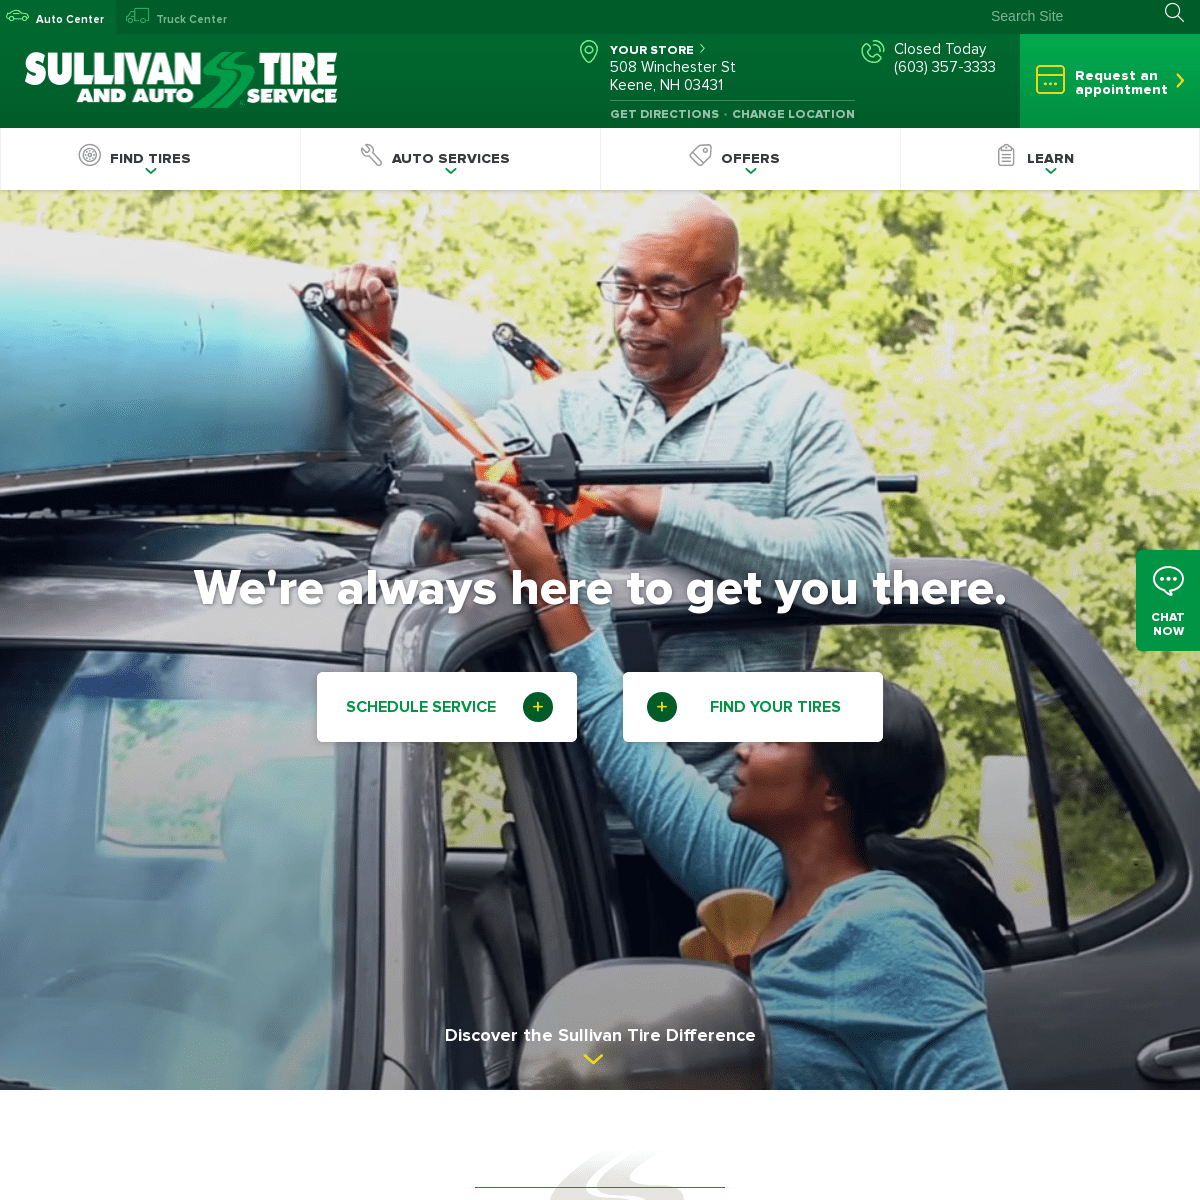 Home | Sullivan Tire & Auto Service